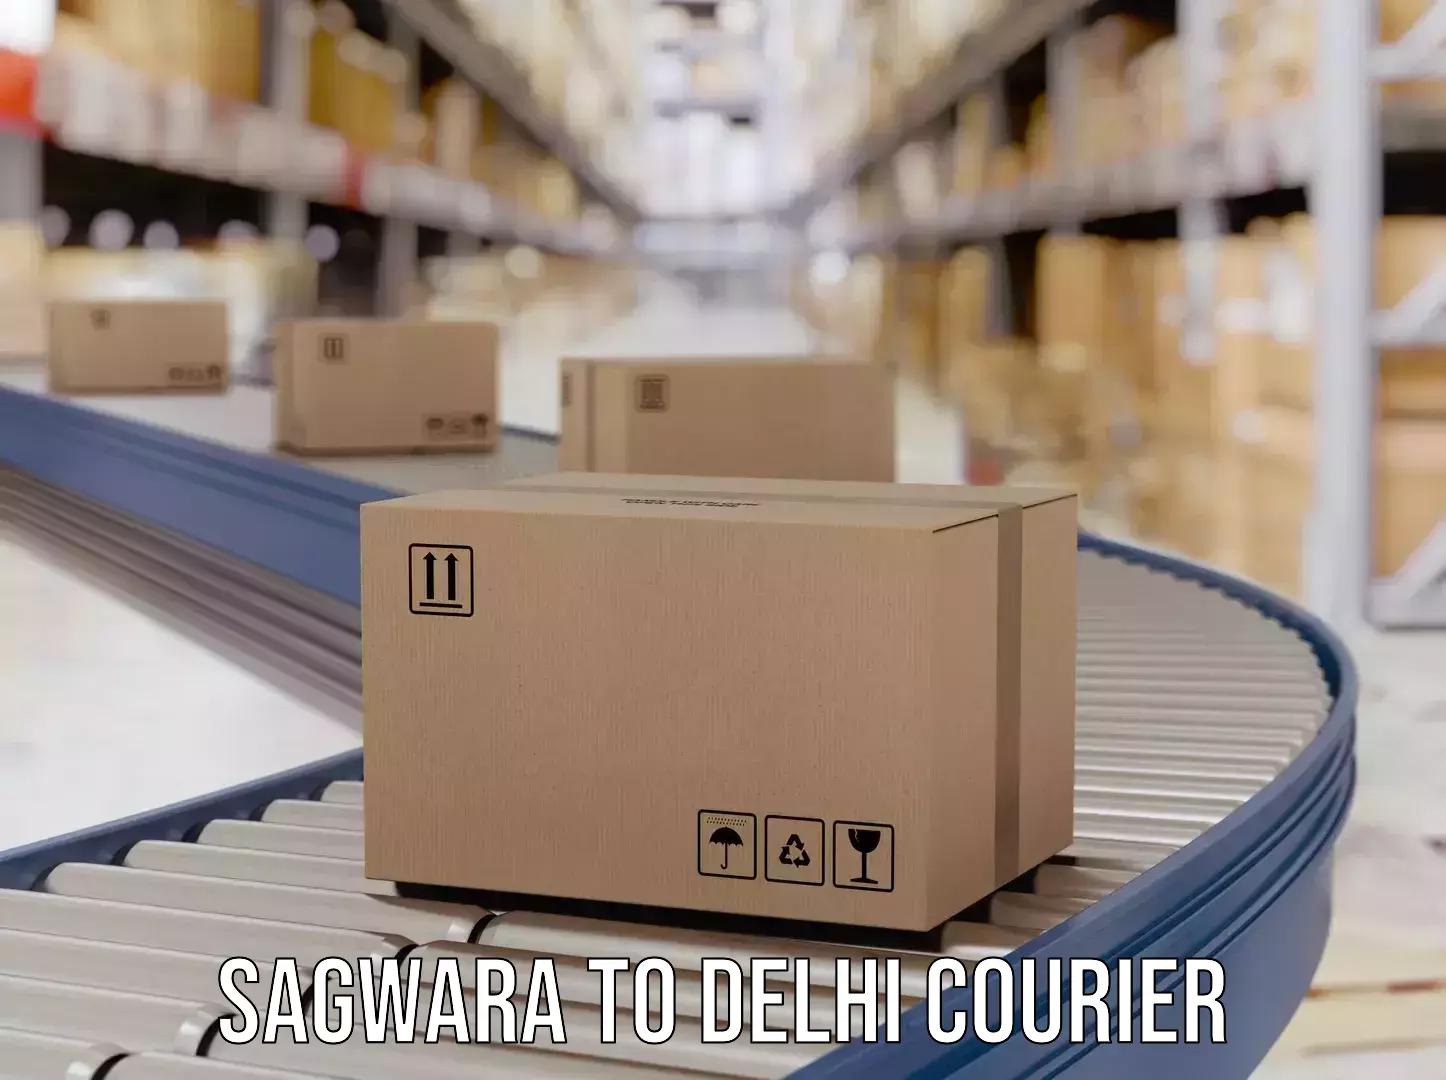 Express delivery solutions Sagwara to Delhi